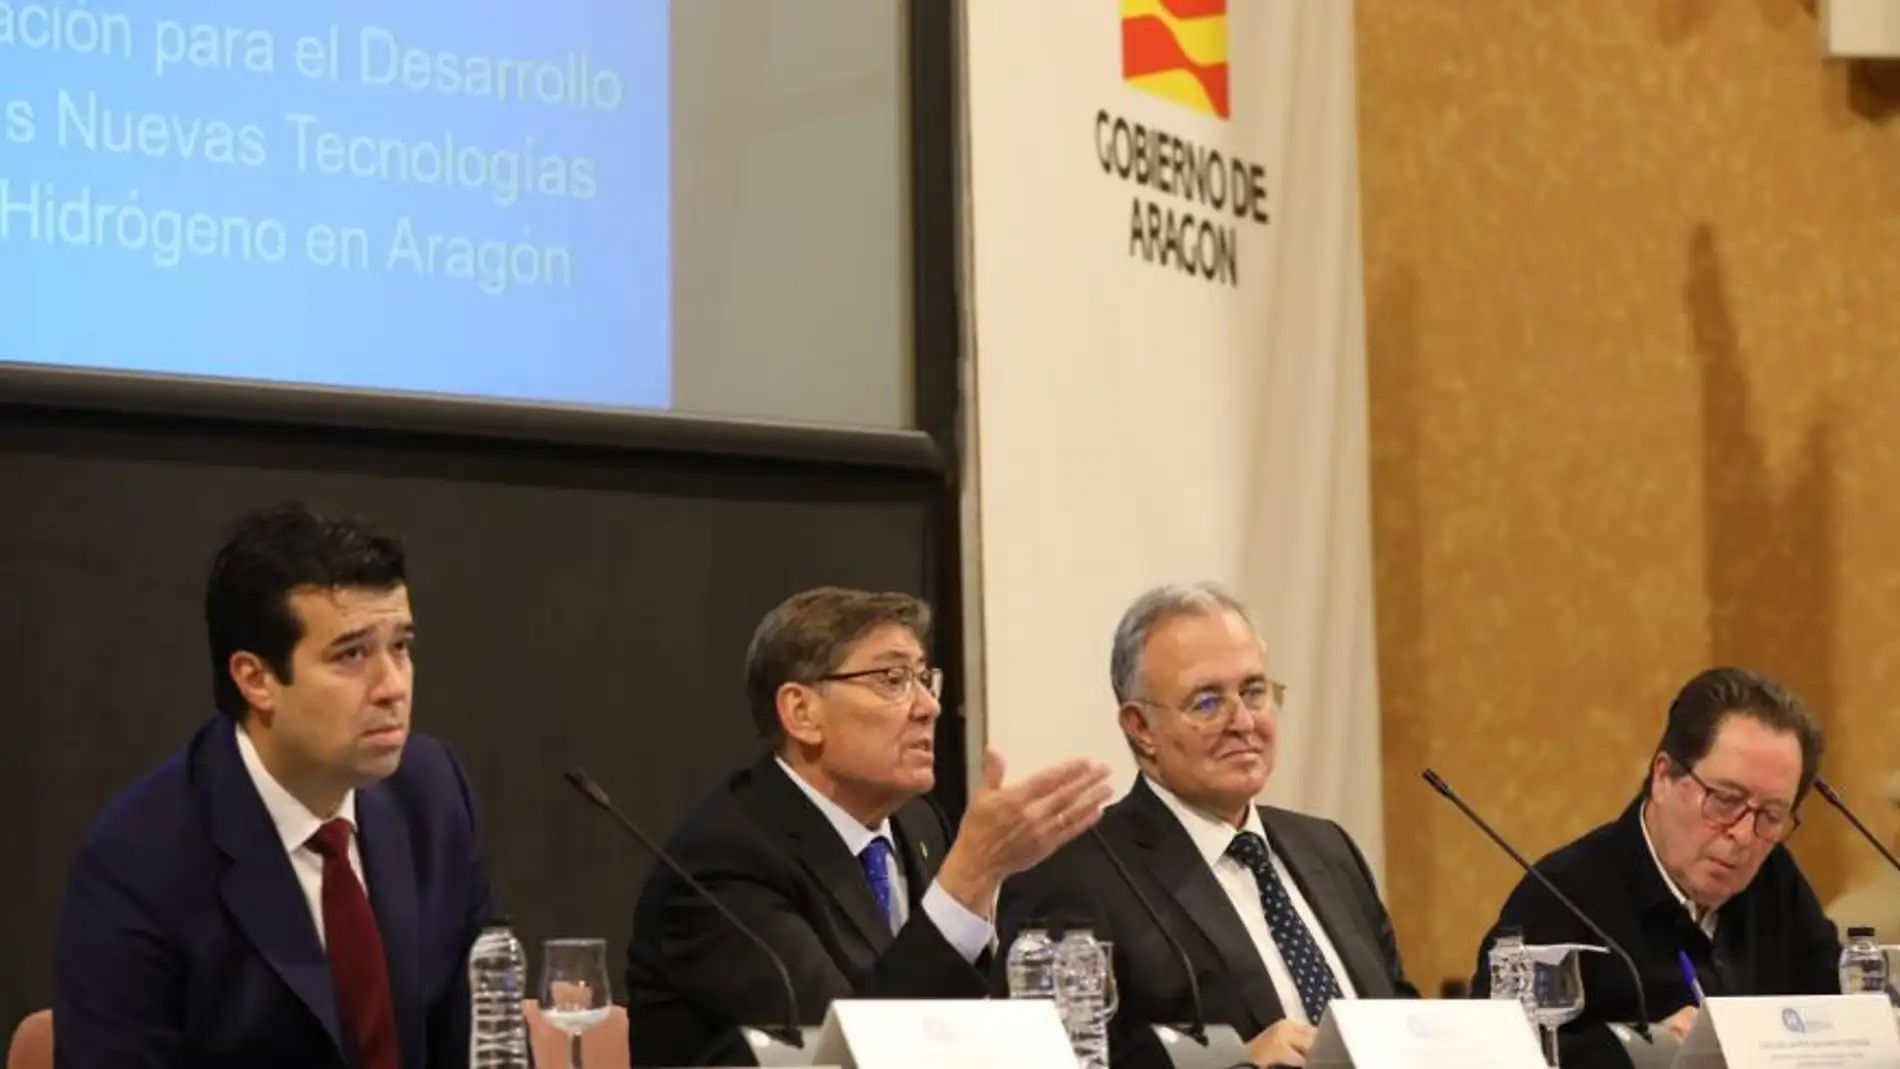 Dos de los siete proyectos españoles sobre hidrógeno verde se desarrollarán en Aragón